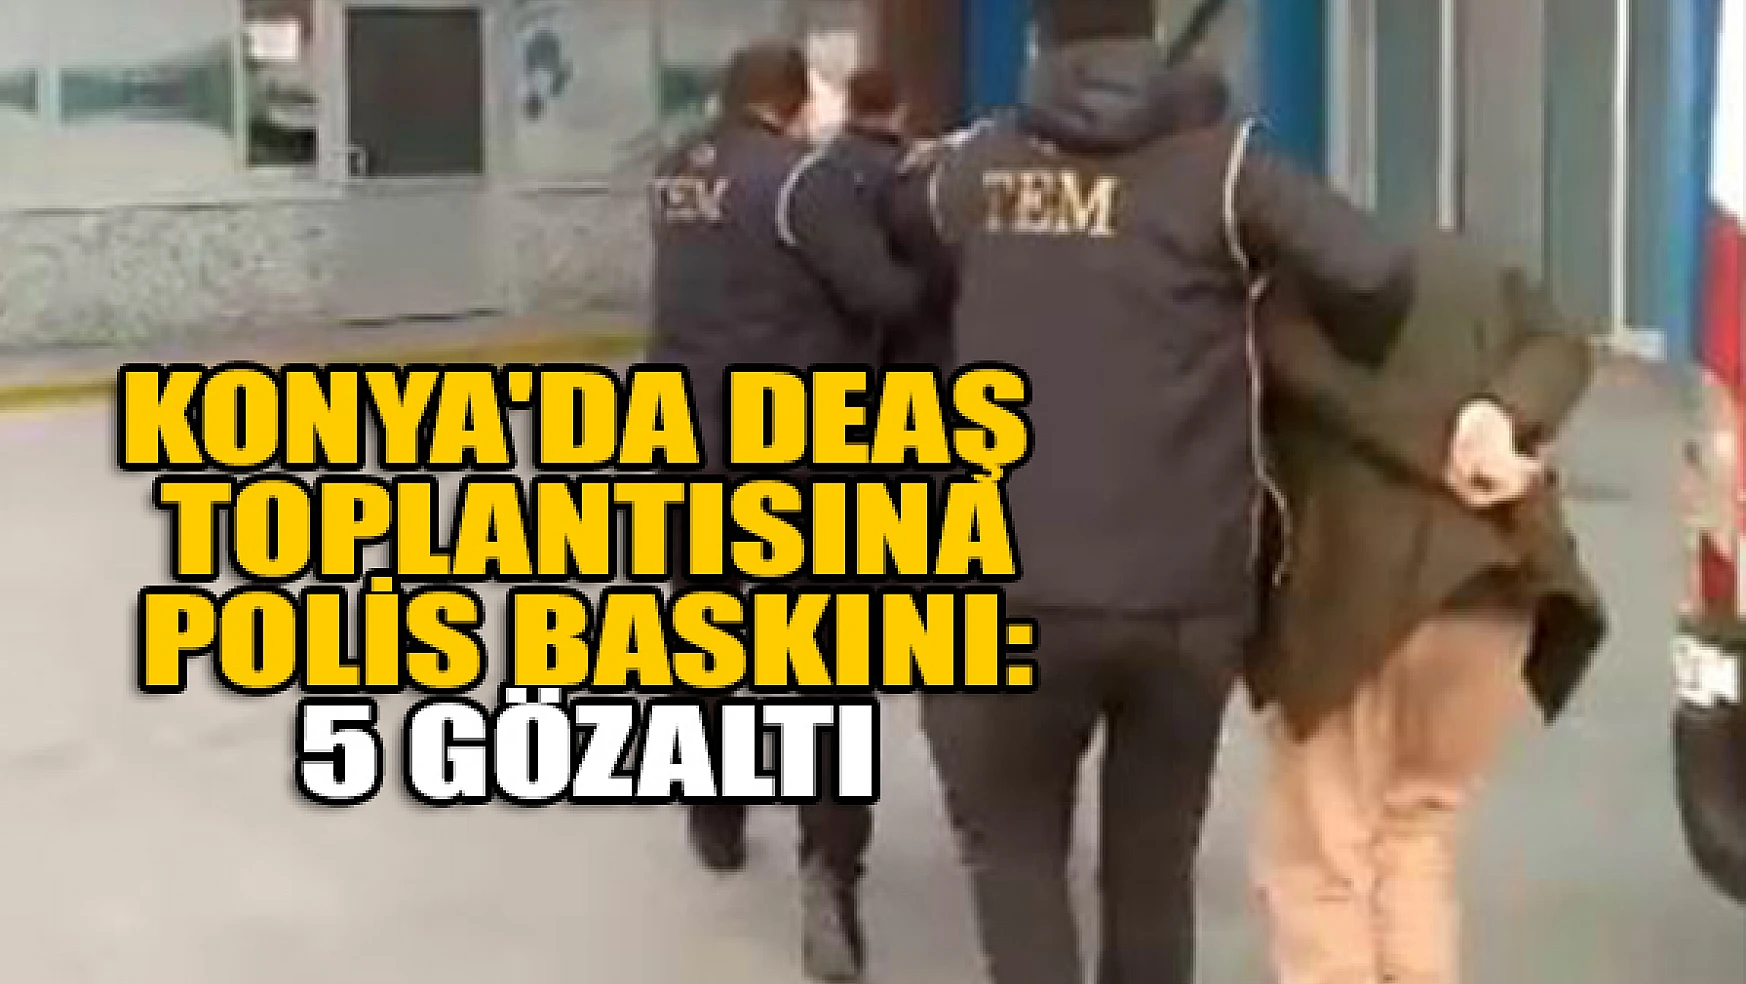 Konya'da DEAŞ toplantısına polis baskını: 5 gözaltı